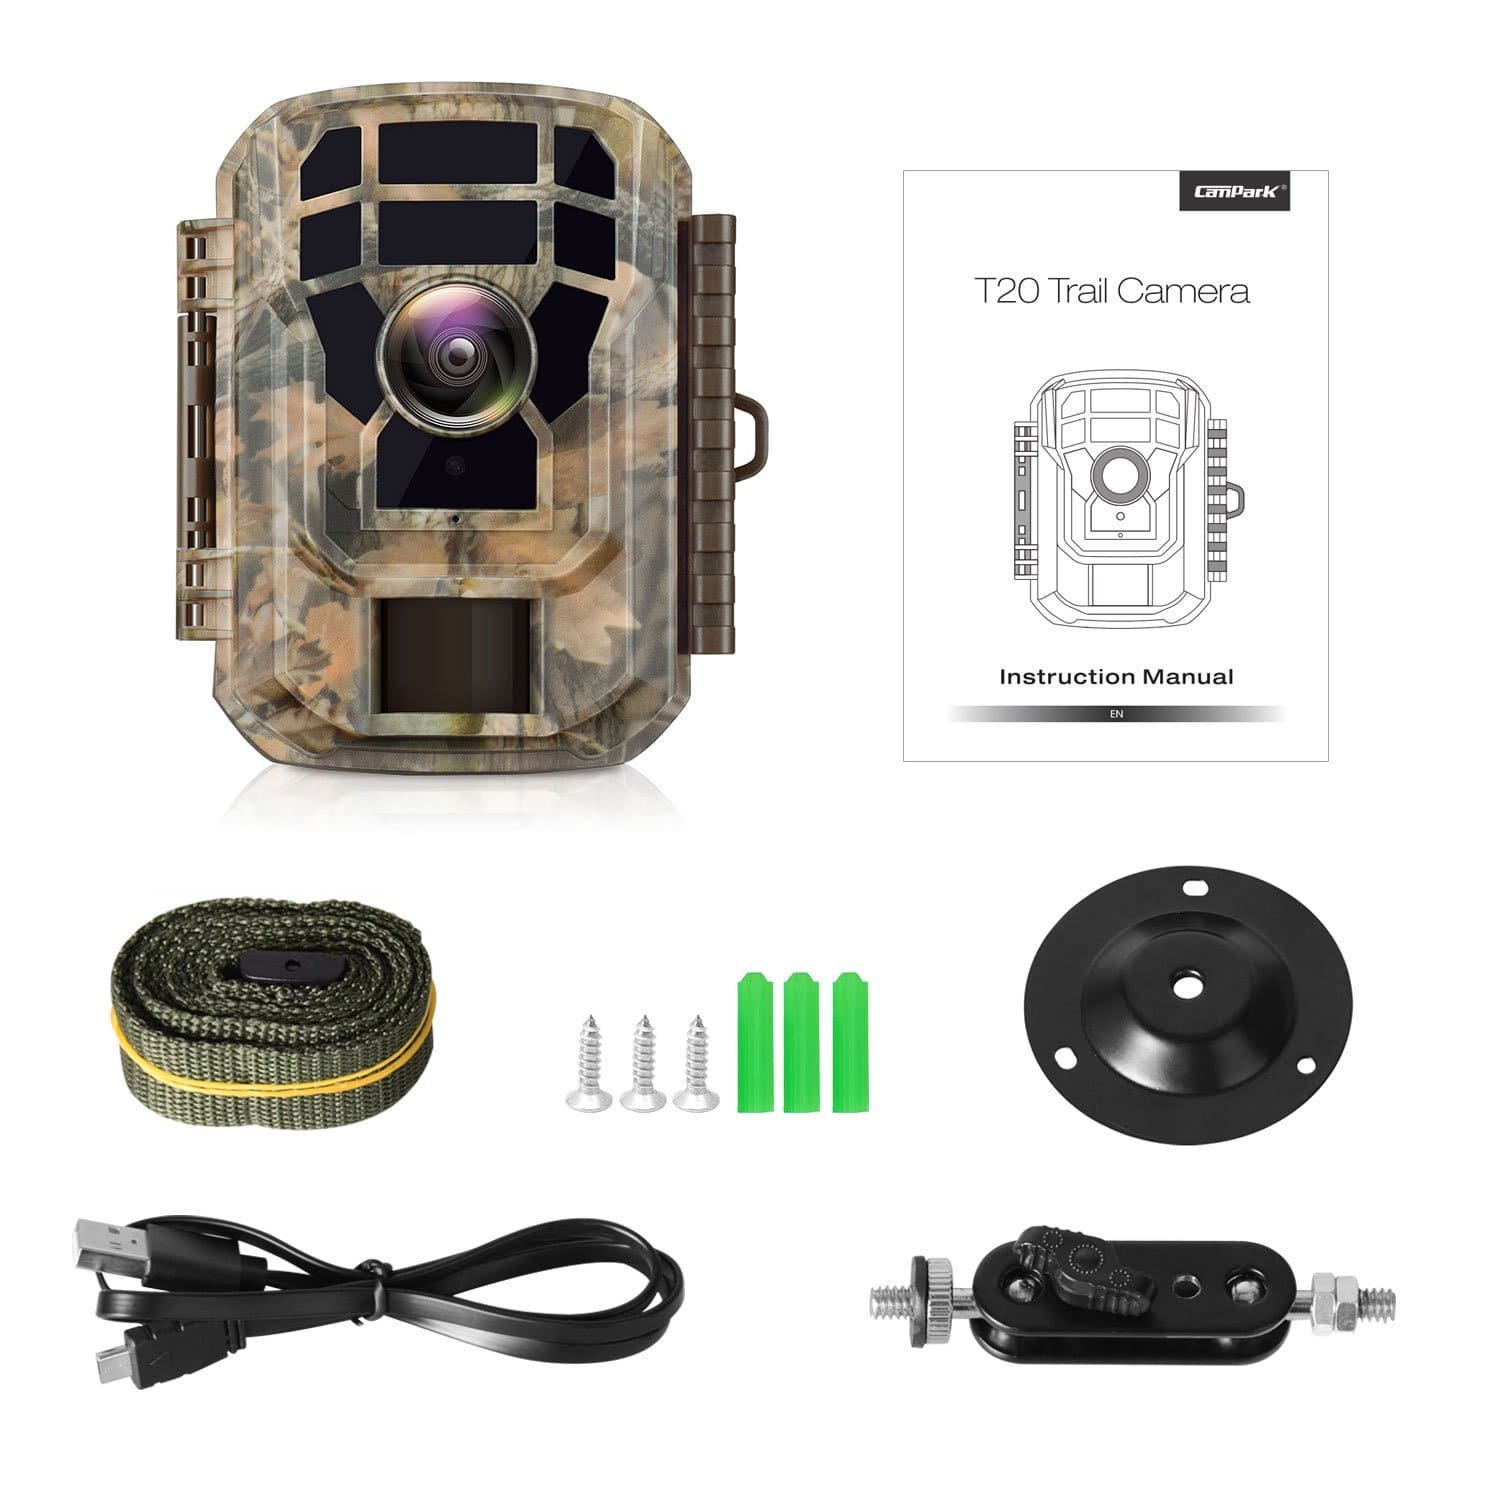 Campark T20 Mini Trail Camera Package